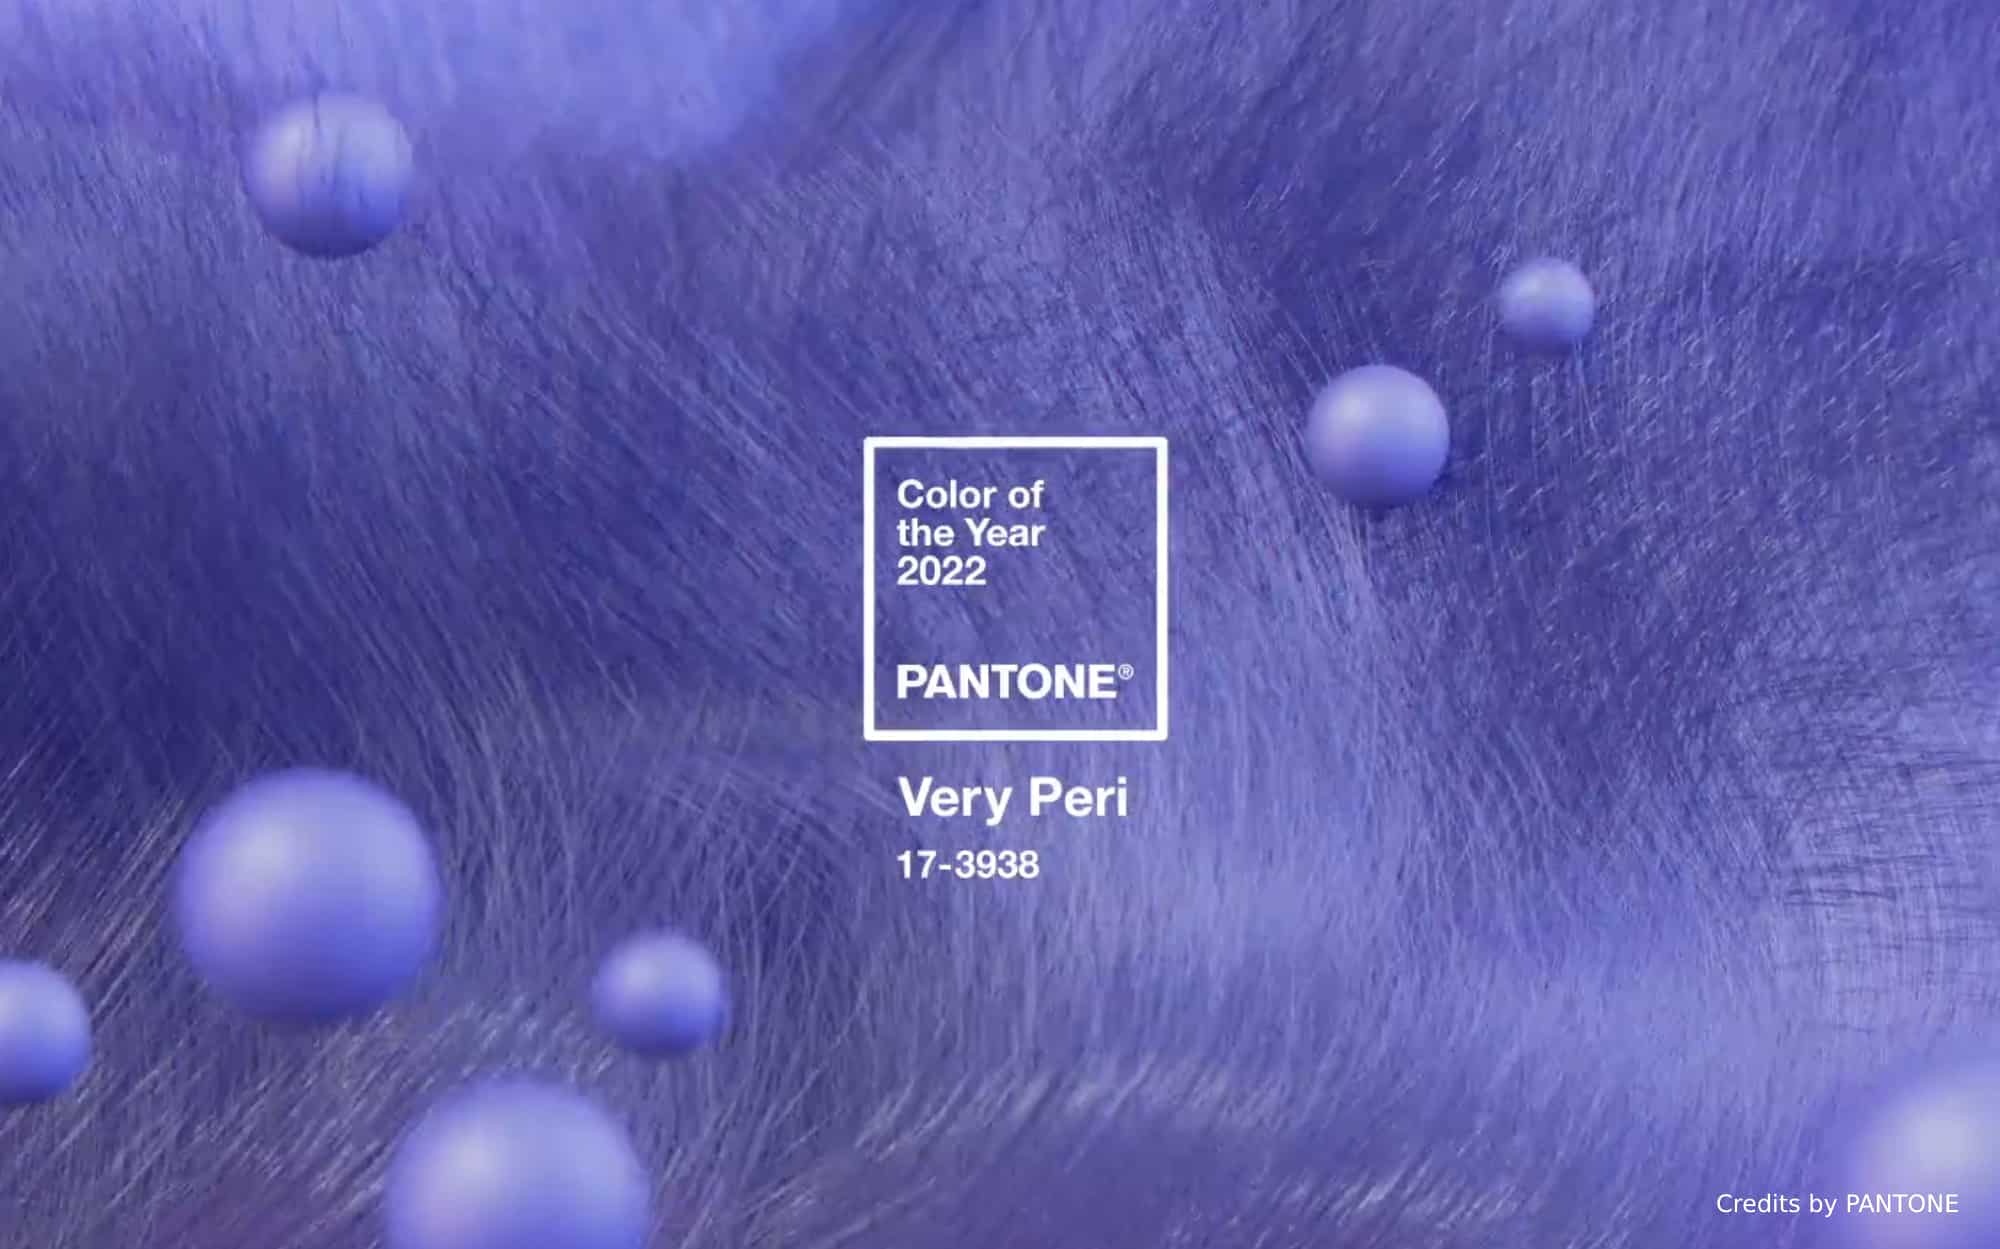 Colore Pantone 2022: Very Peri è colore dell'anno